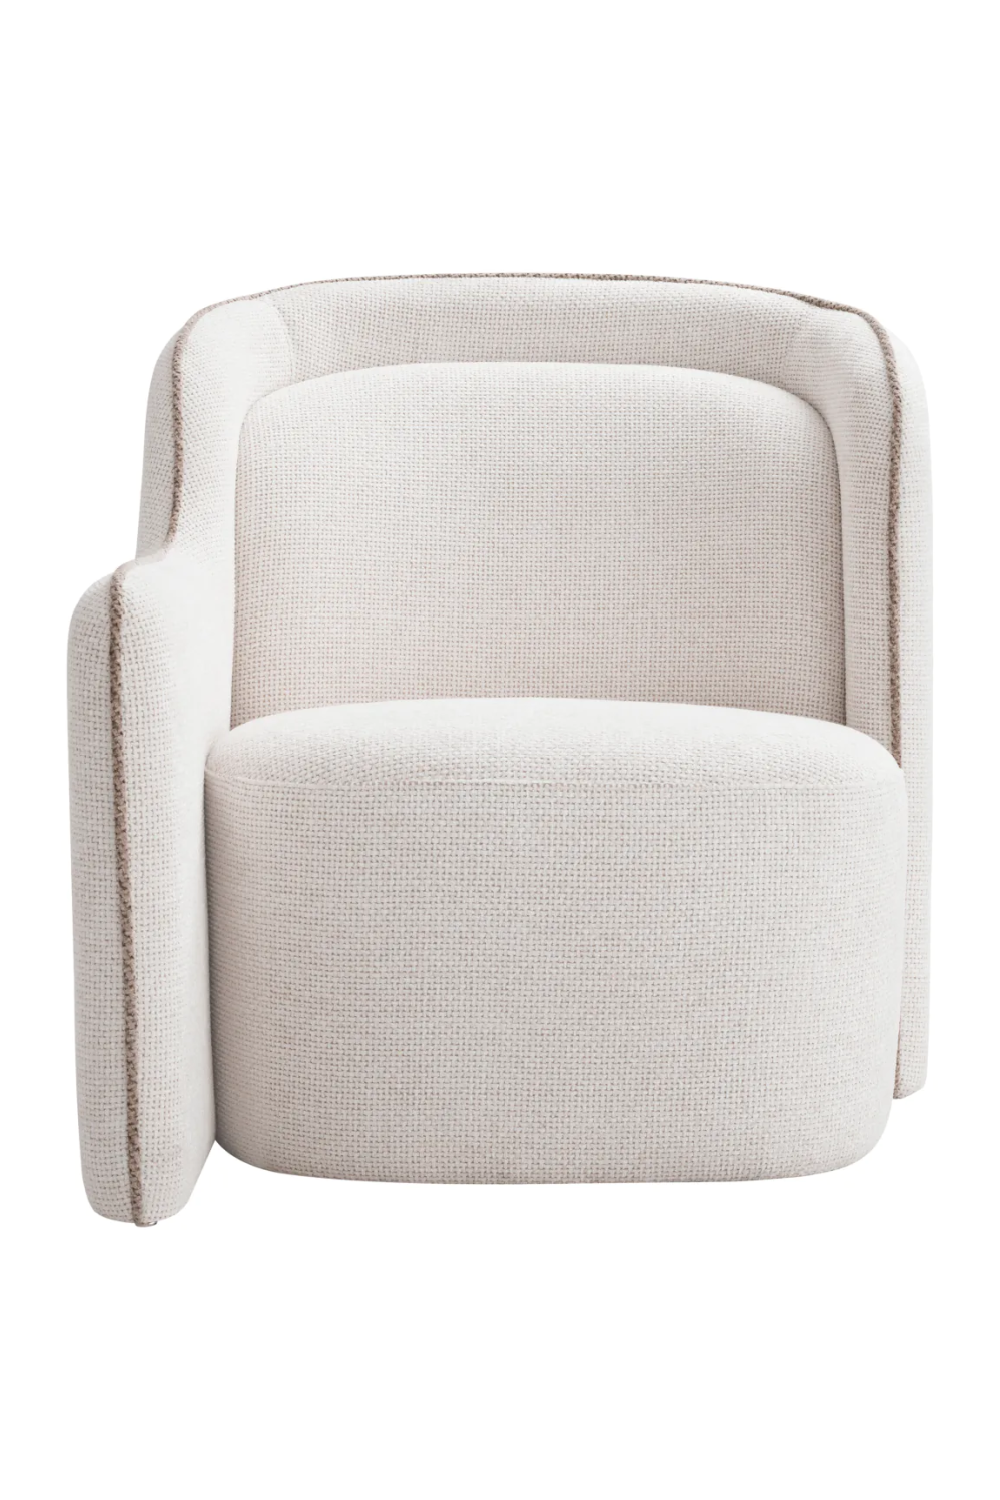 White Modular Accent Chair | Eichholtz Barrier | Oroa.com